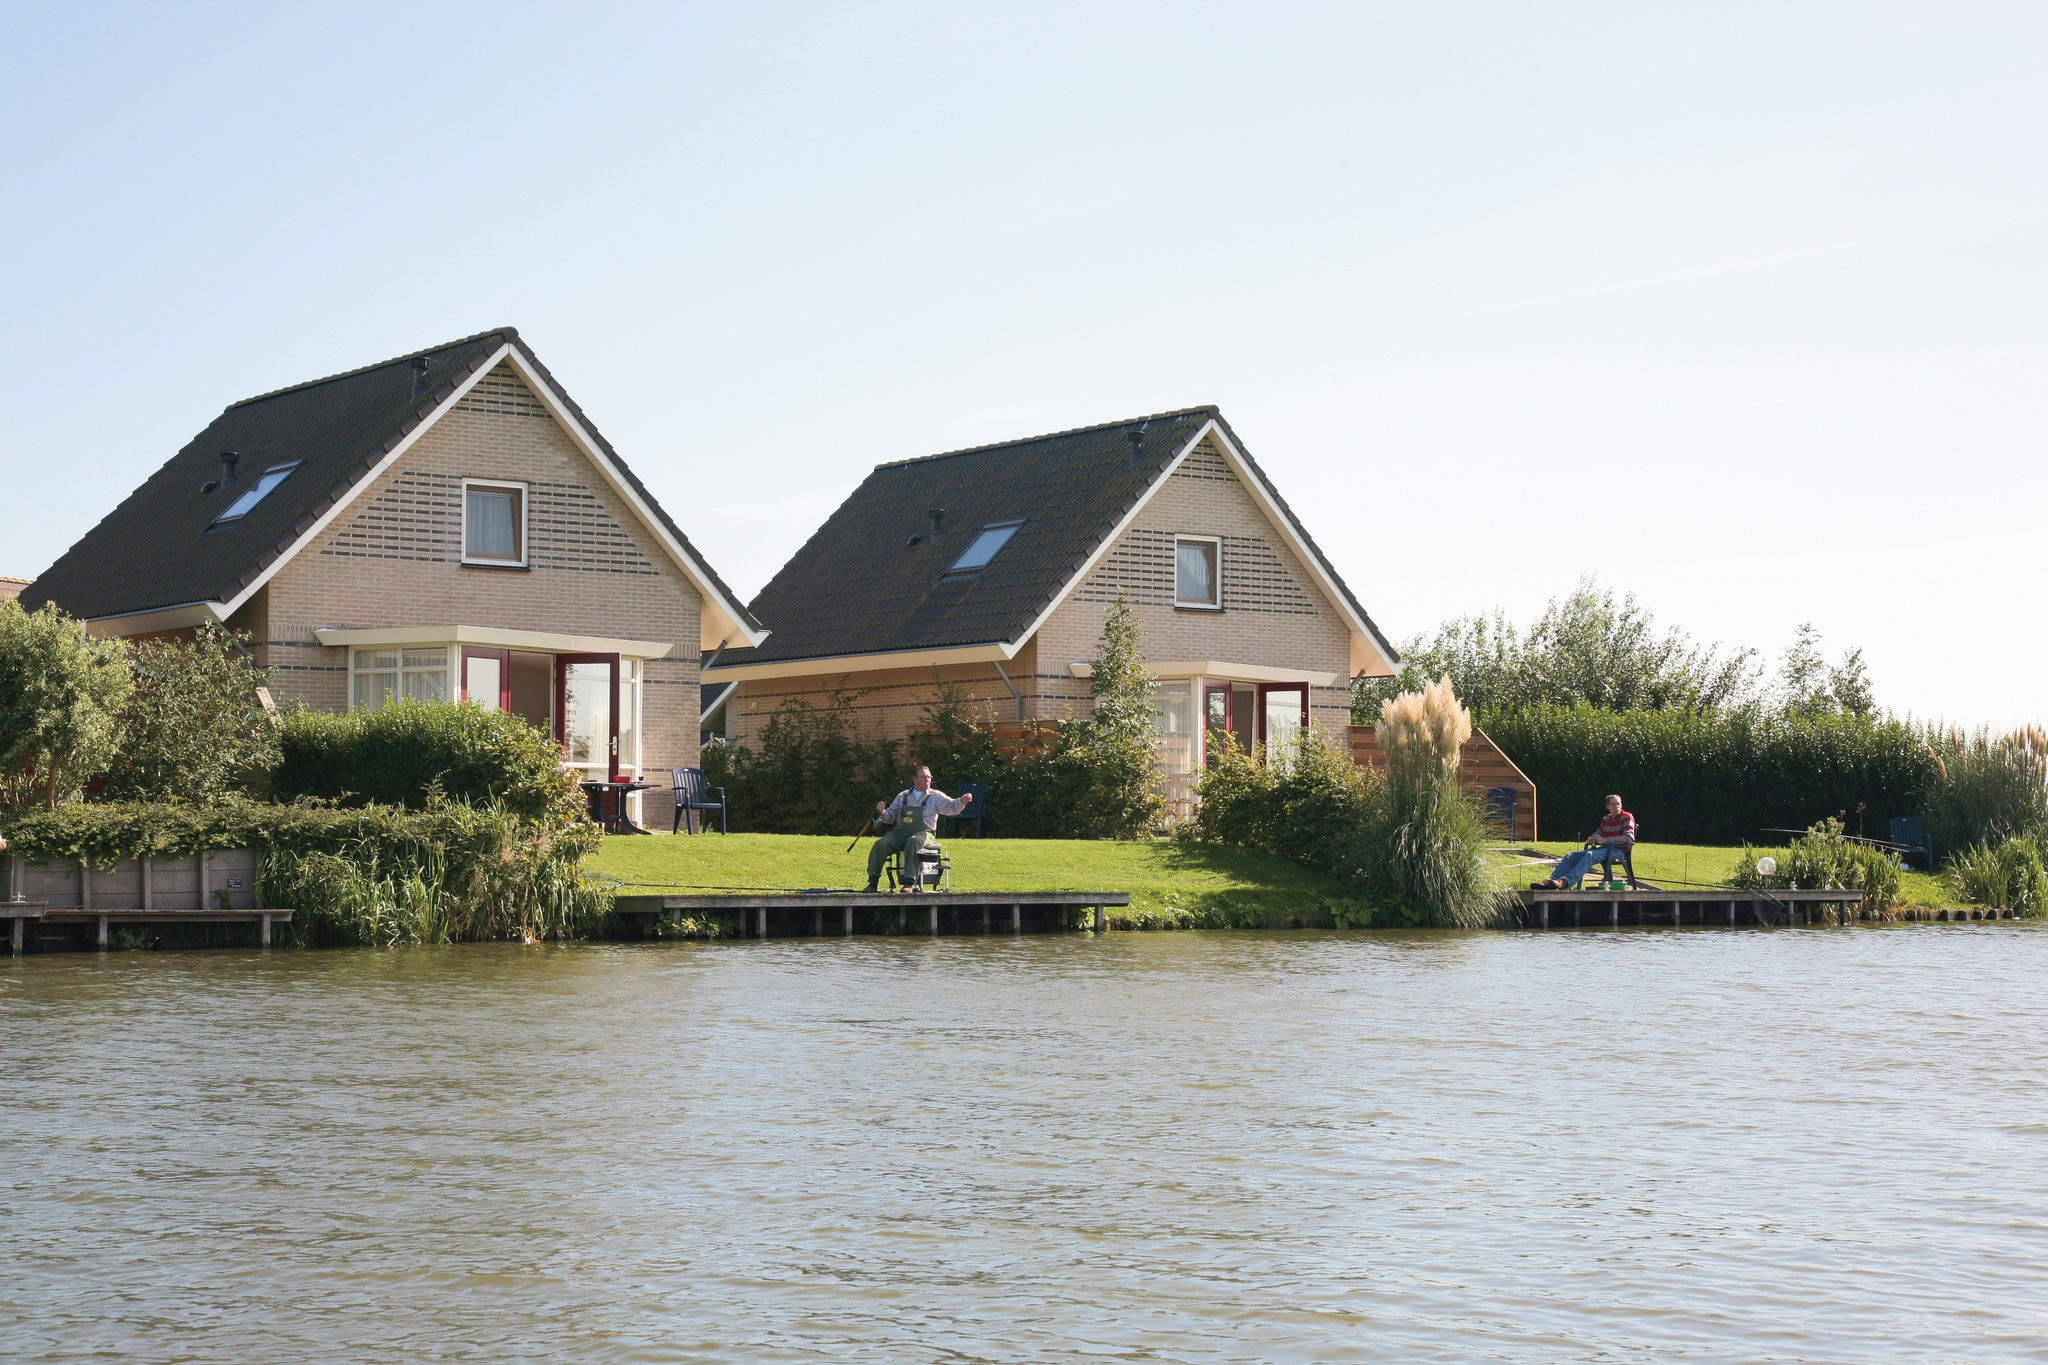 Schönes Haus mit Steg in der Nähe des IJsselmeeres